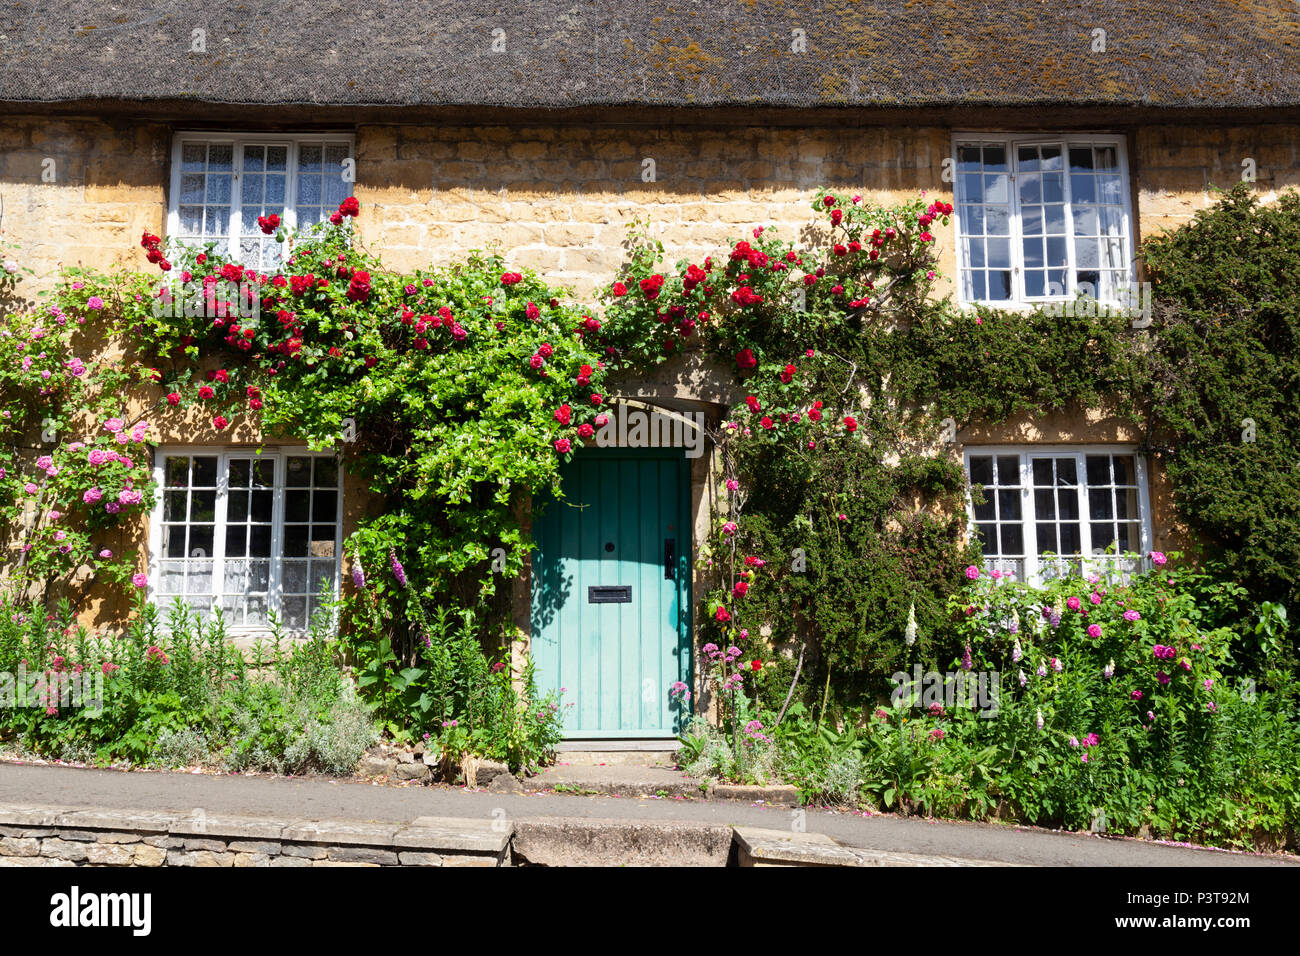 Rose couverts chaumière dans village de campagne, Ebrington, les Cotswolds, Gloucestershire, Angleterre, Royaume-Uni, l'Europoe Banque D'Images